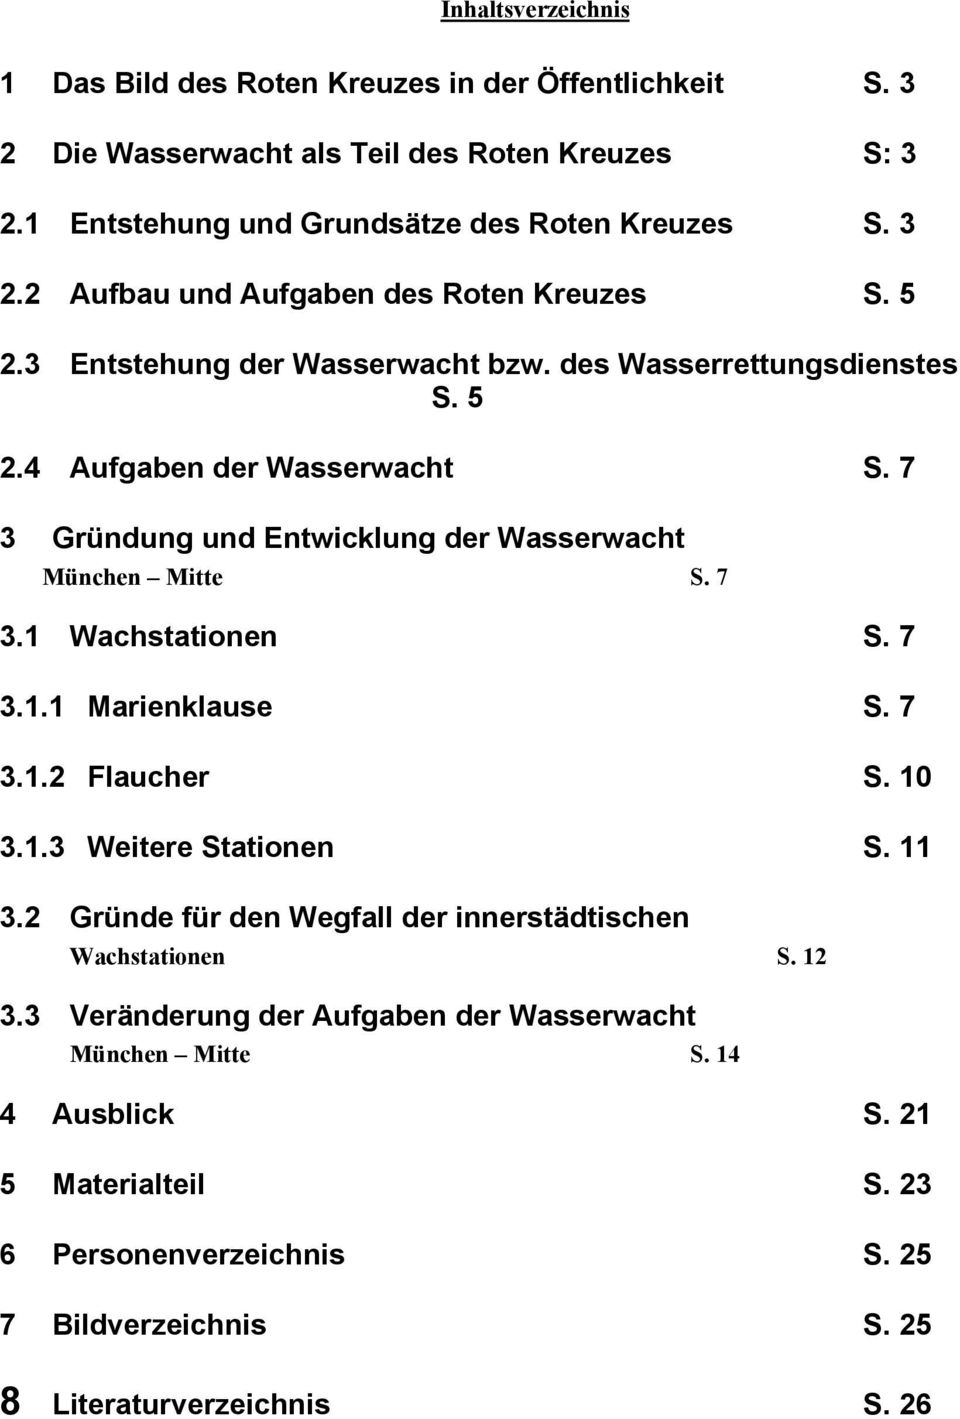 7 3.1.1 Marienklause S. 7 3.1.2 Flaucher S. 10 3.1.3 Weitere Stationen S. 11 3.2 Gründe für den Wegfall der innerstädtischen Wachstationen S. 12 3.